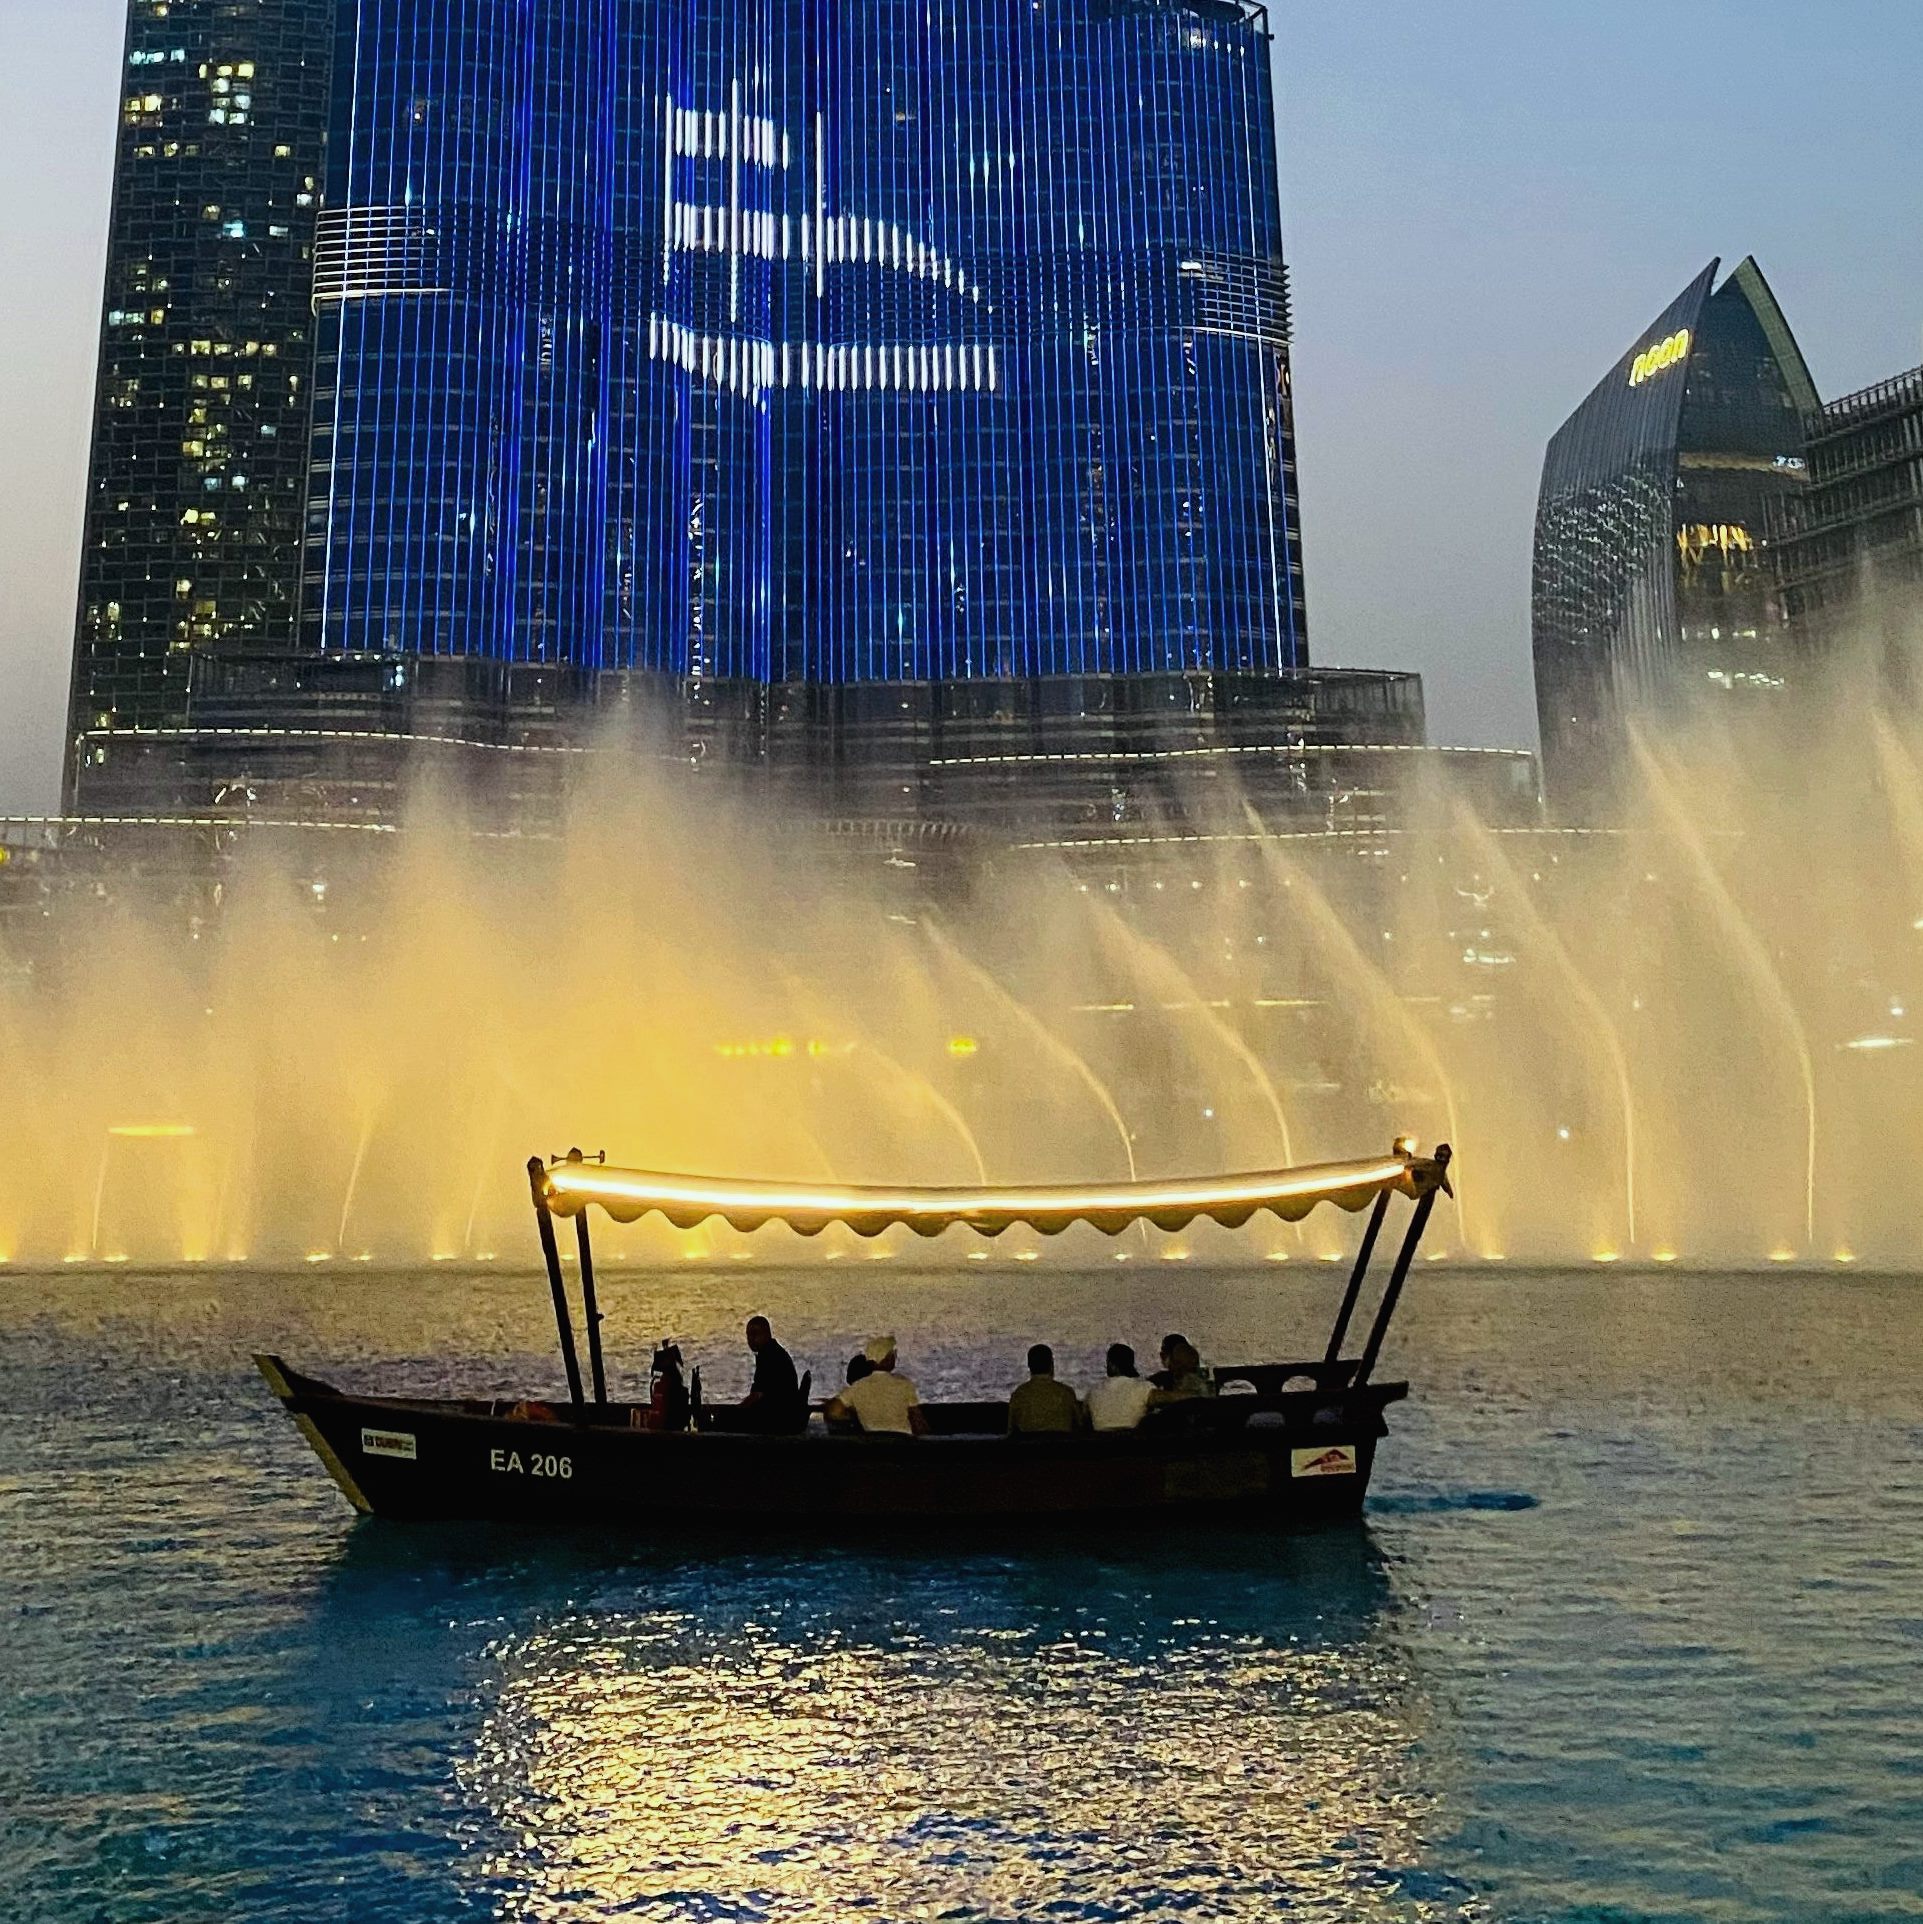 Dubai Fountain Show Lake Ride From Ras Al Khaimah